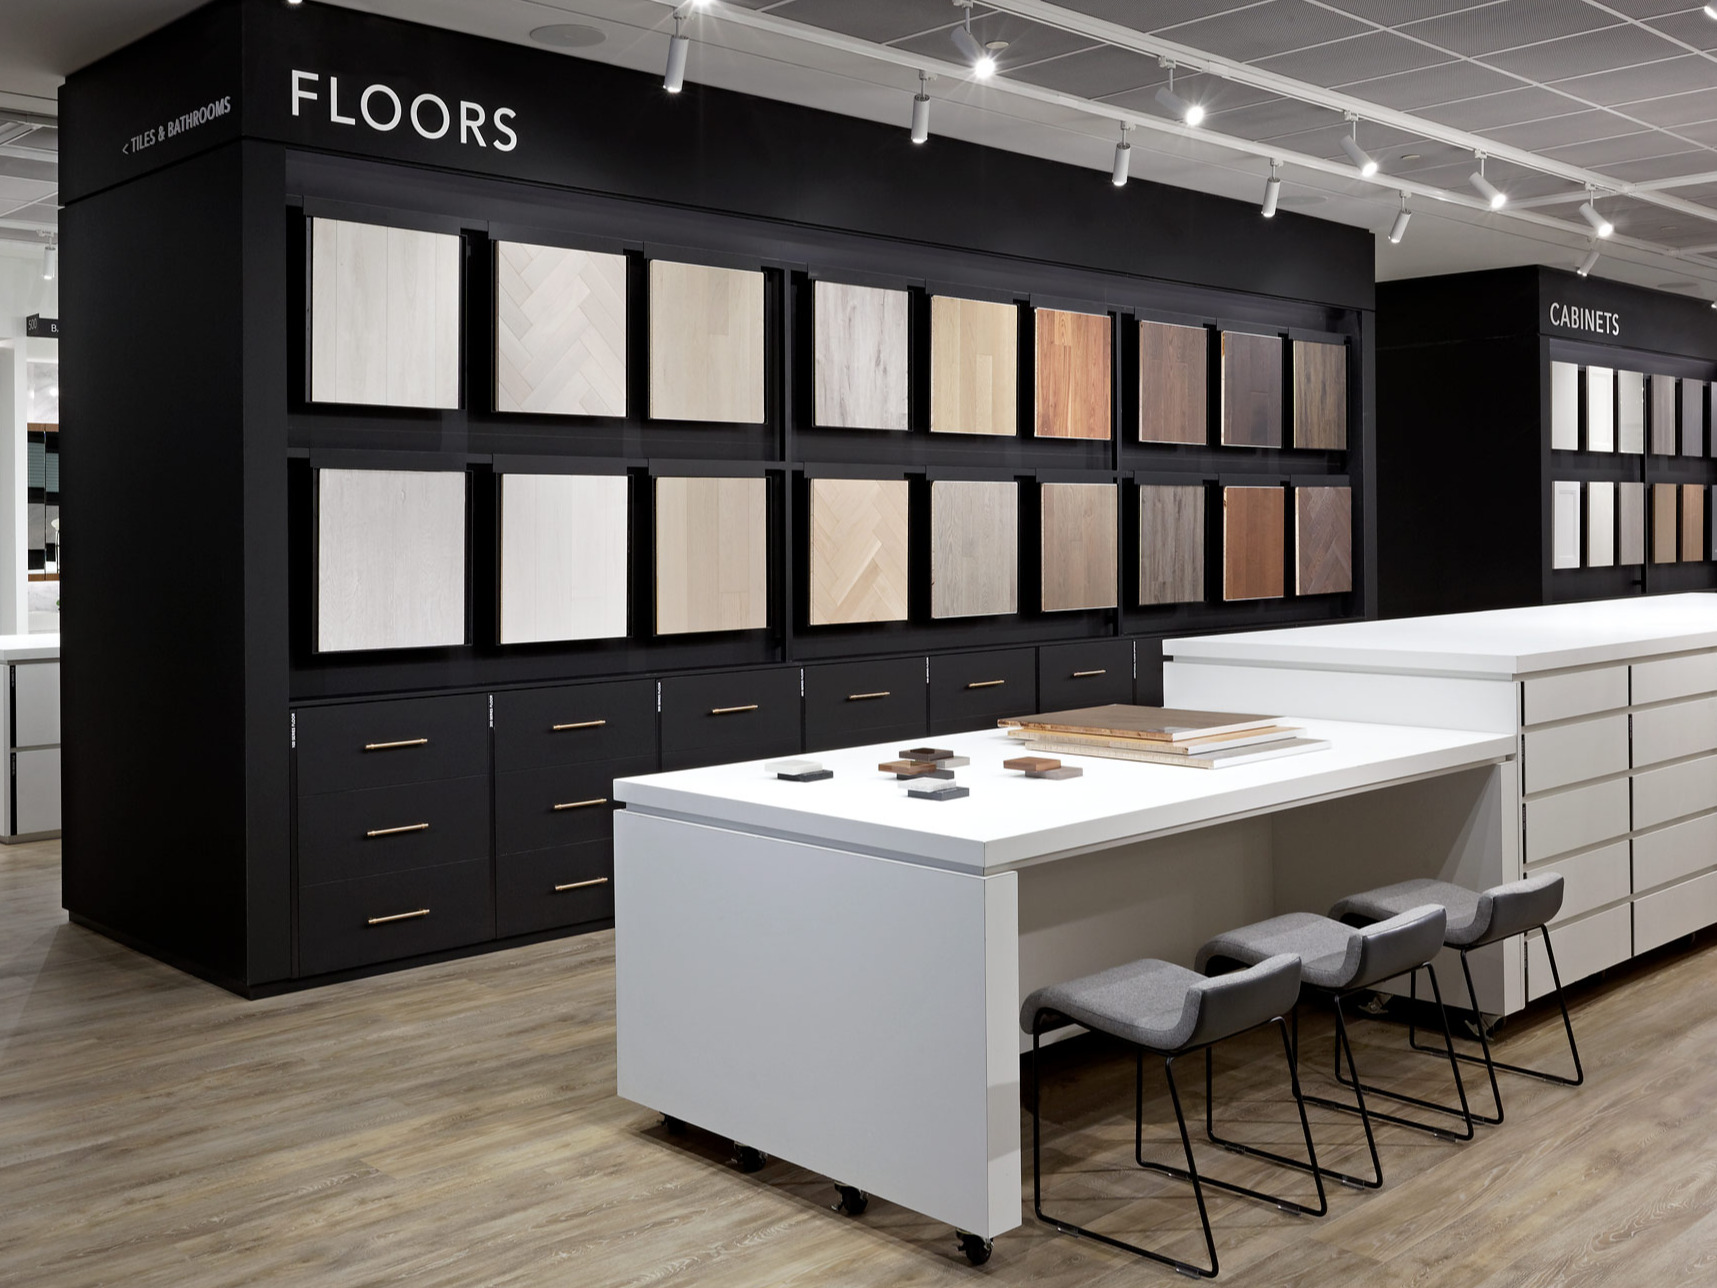 Design Studio Floor Sample Wall